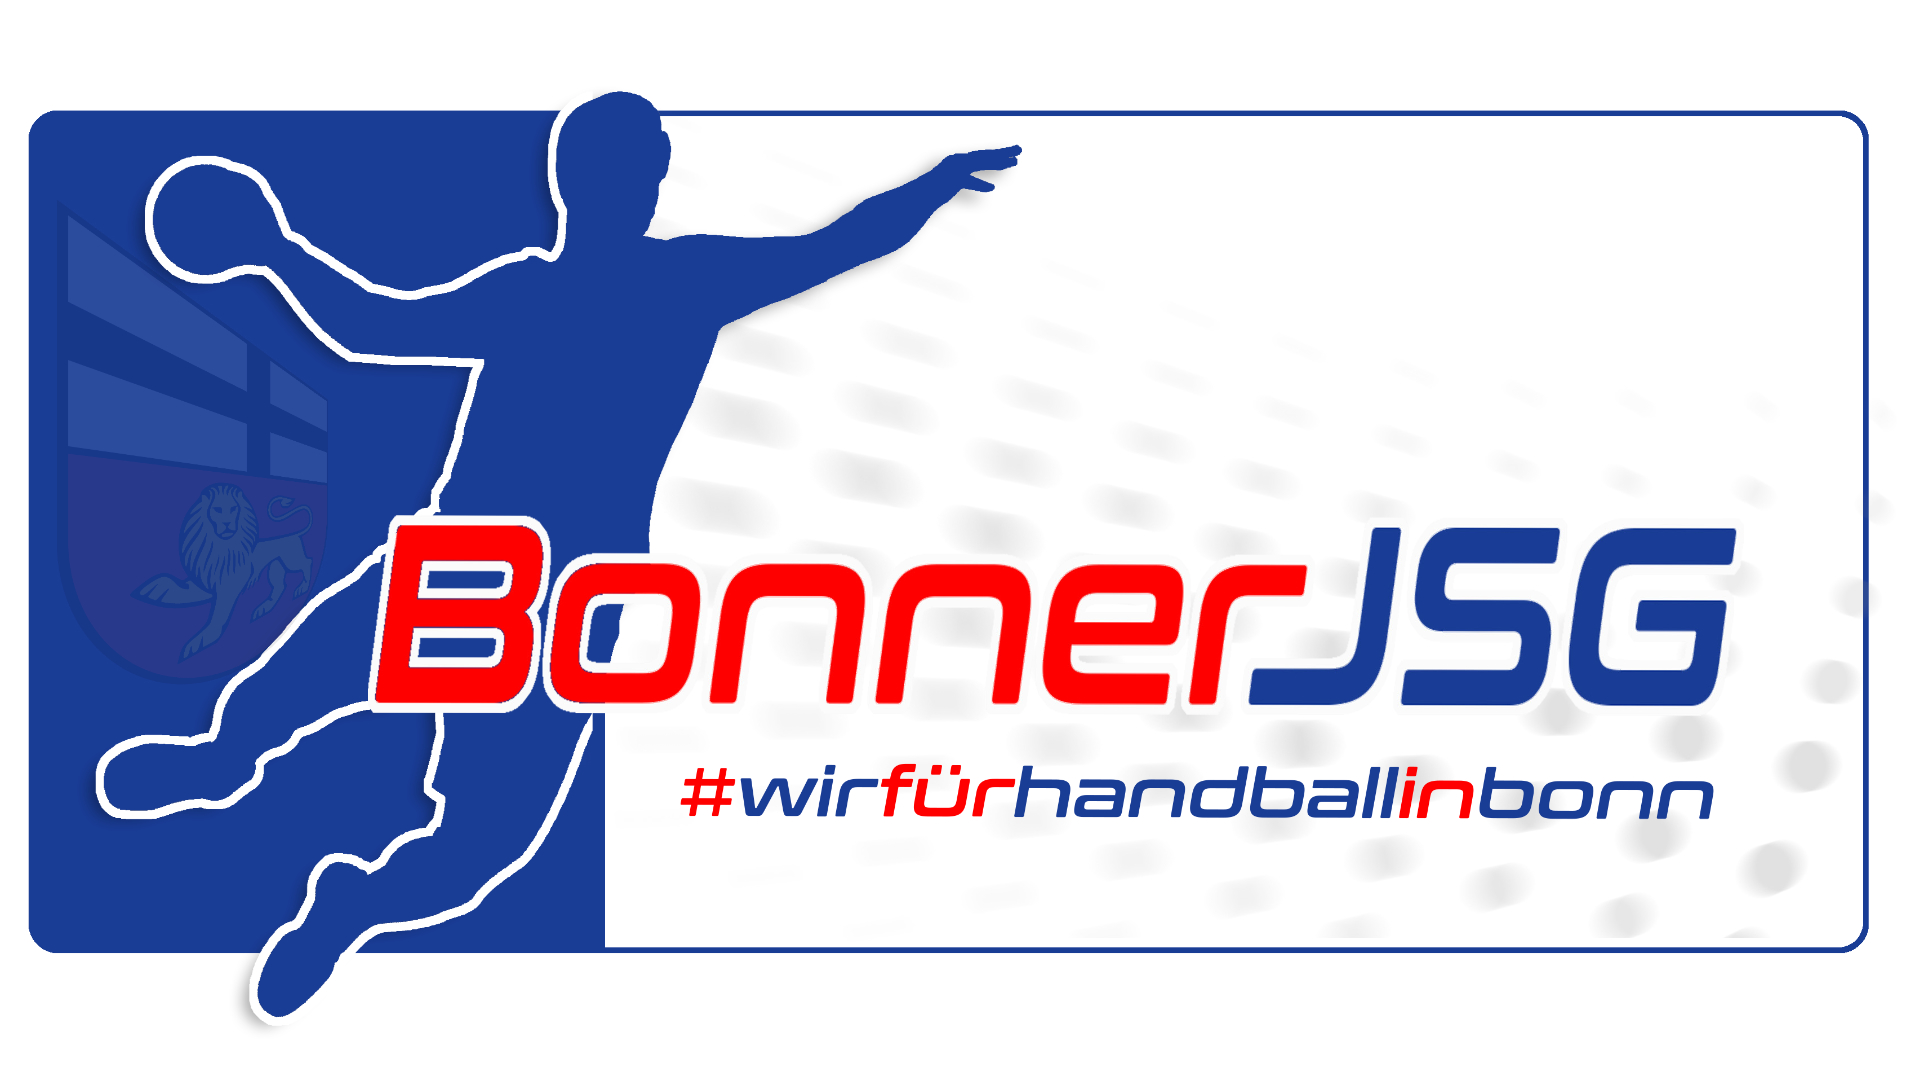 Bonner JSG Logo v18 bonn vektor